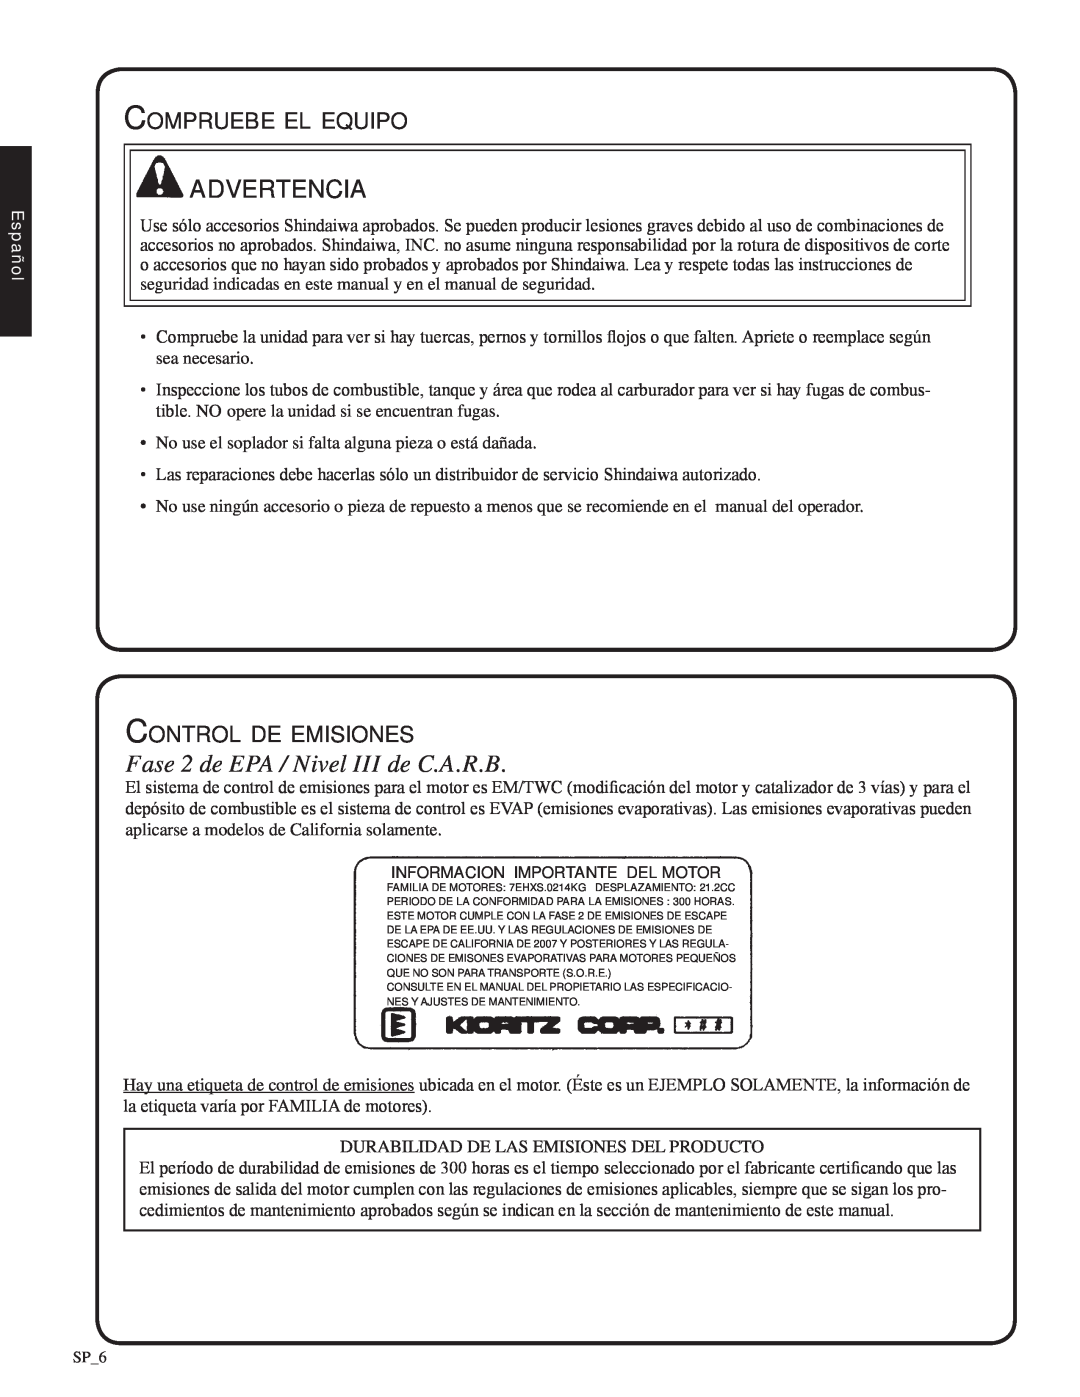 Shindaiwa EB212 Advertencia, Fase 2 de EPA / Nivel III de C.A.R.B, Compruebe el equipo, Control de emisiones, Español 